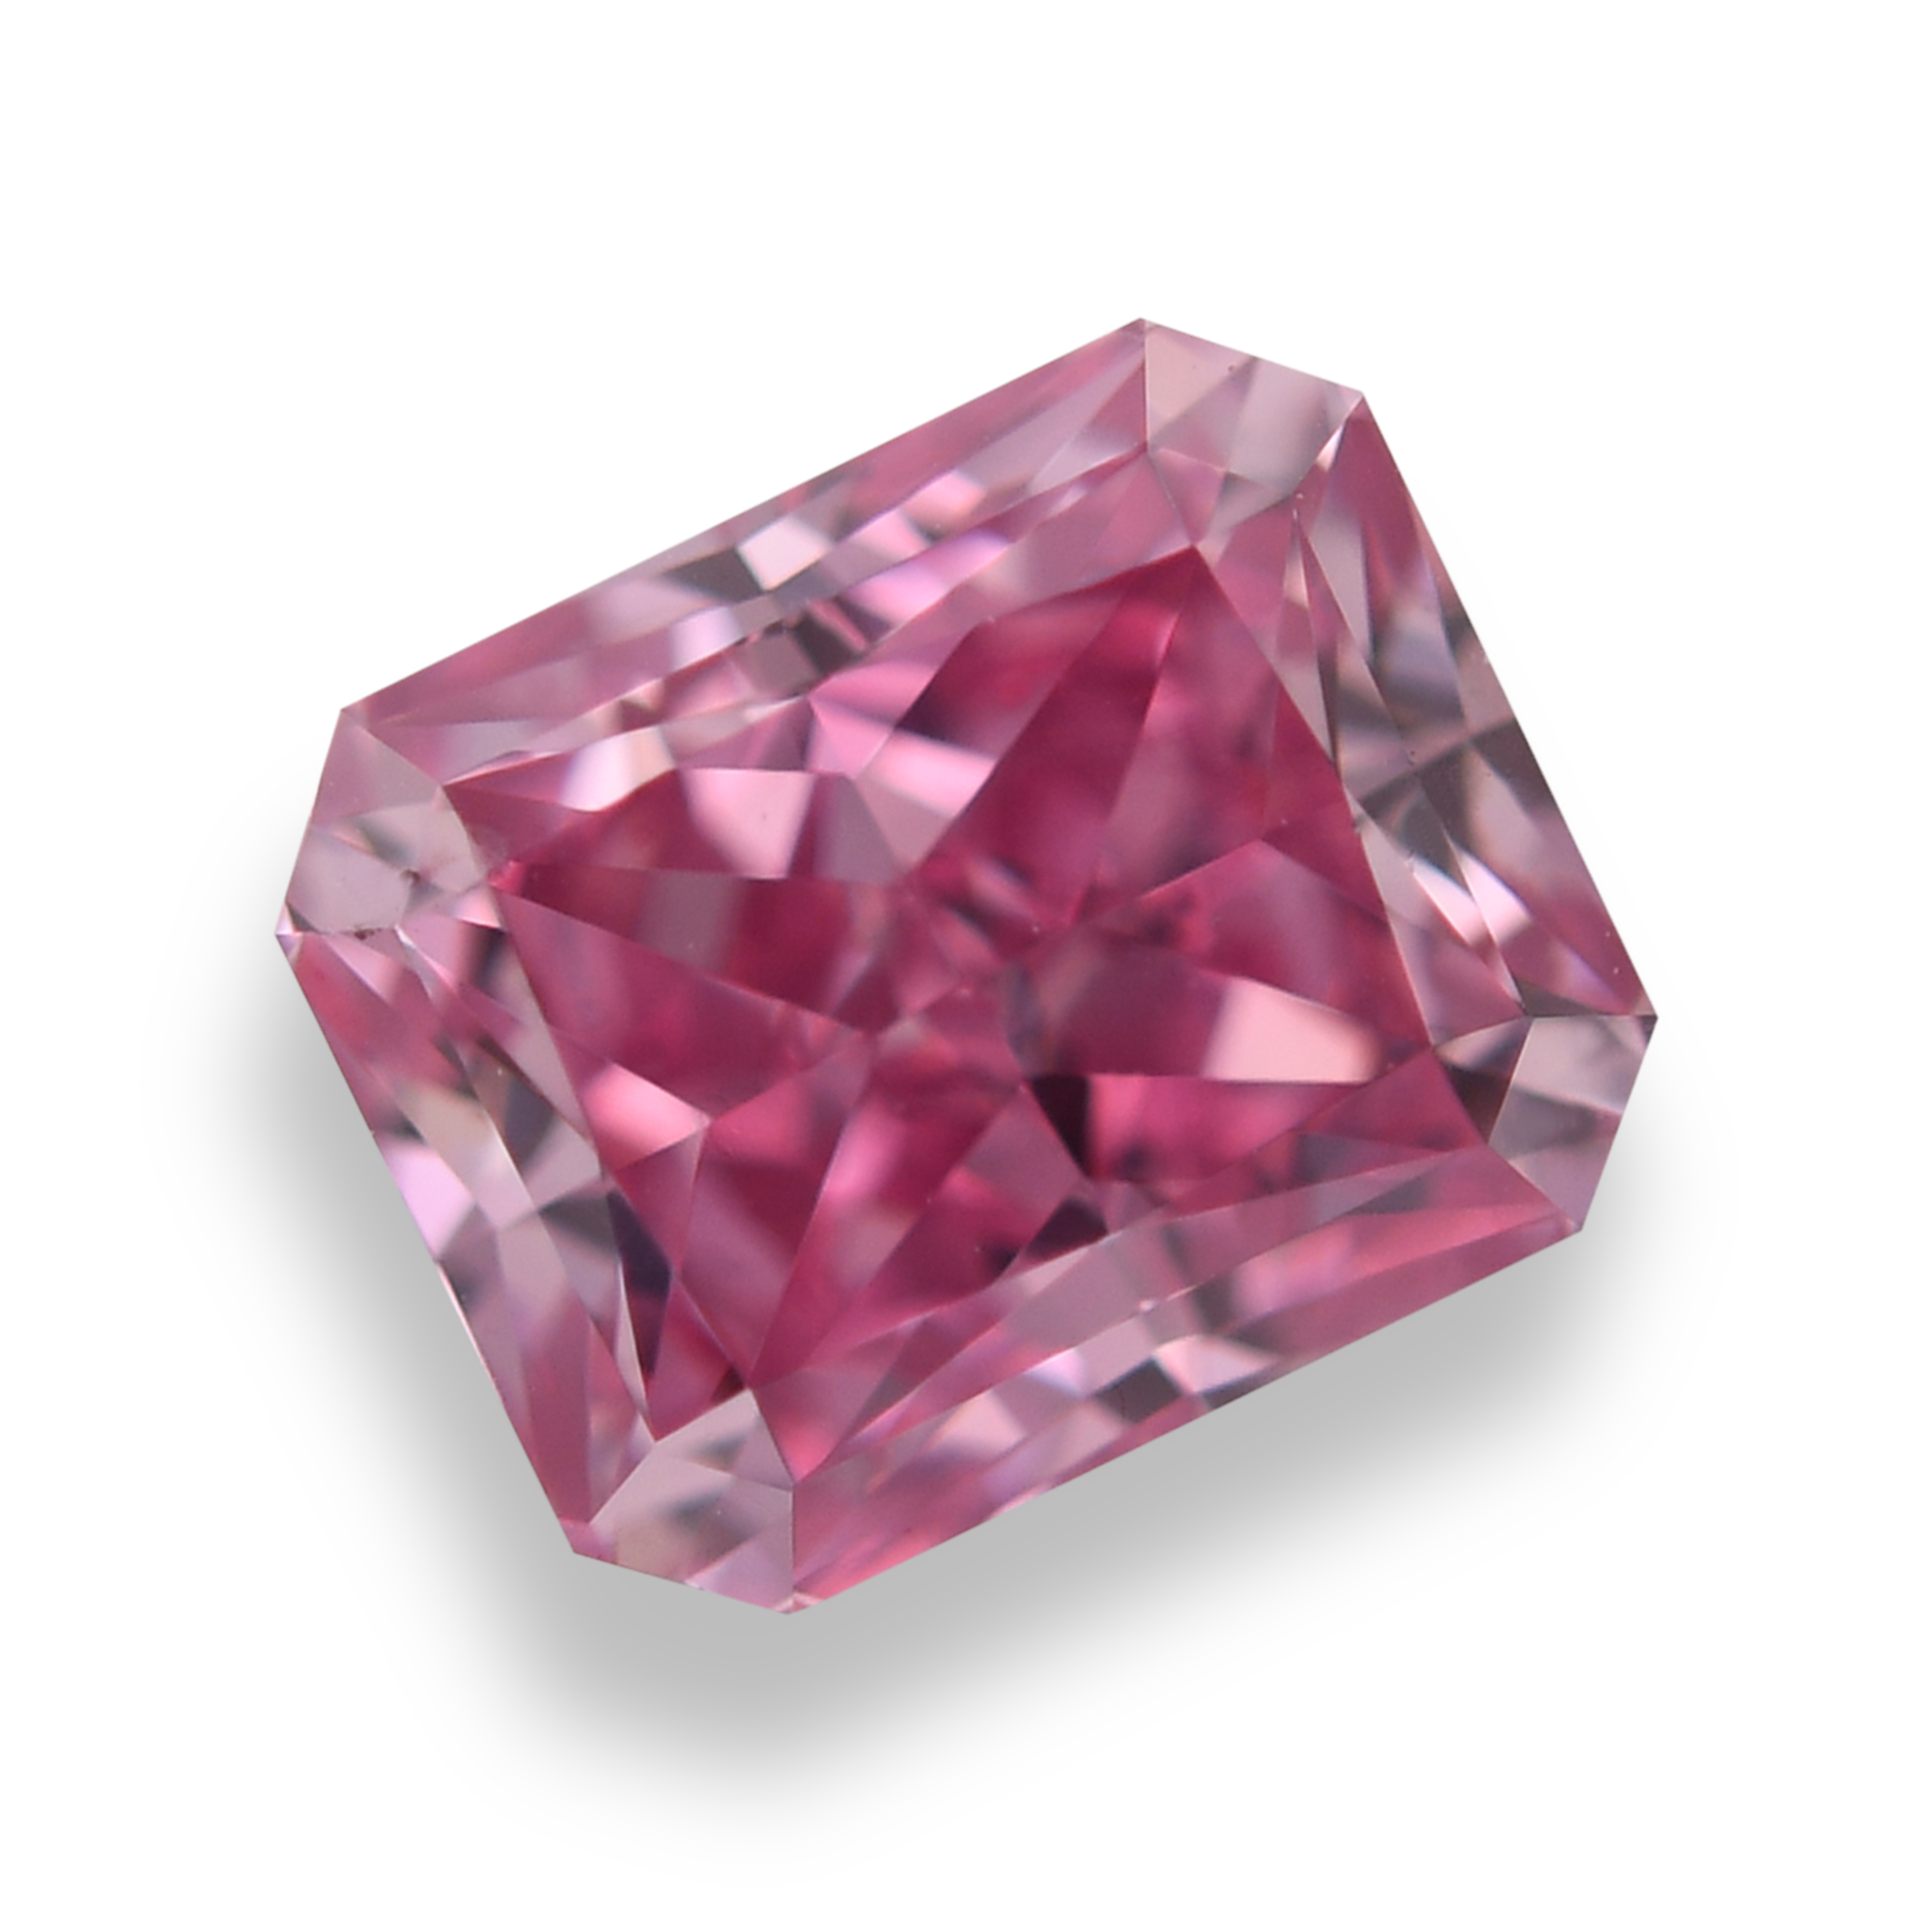 LEIBISH 0.82 carat, Fancy Vivid Purplish Pink Diamond, 3PP, GIA & ARGYLE